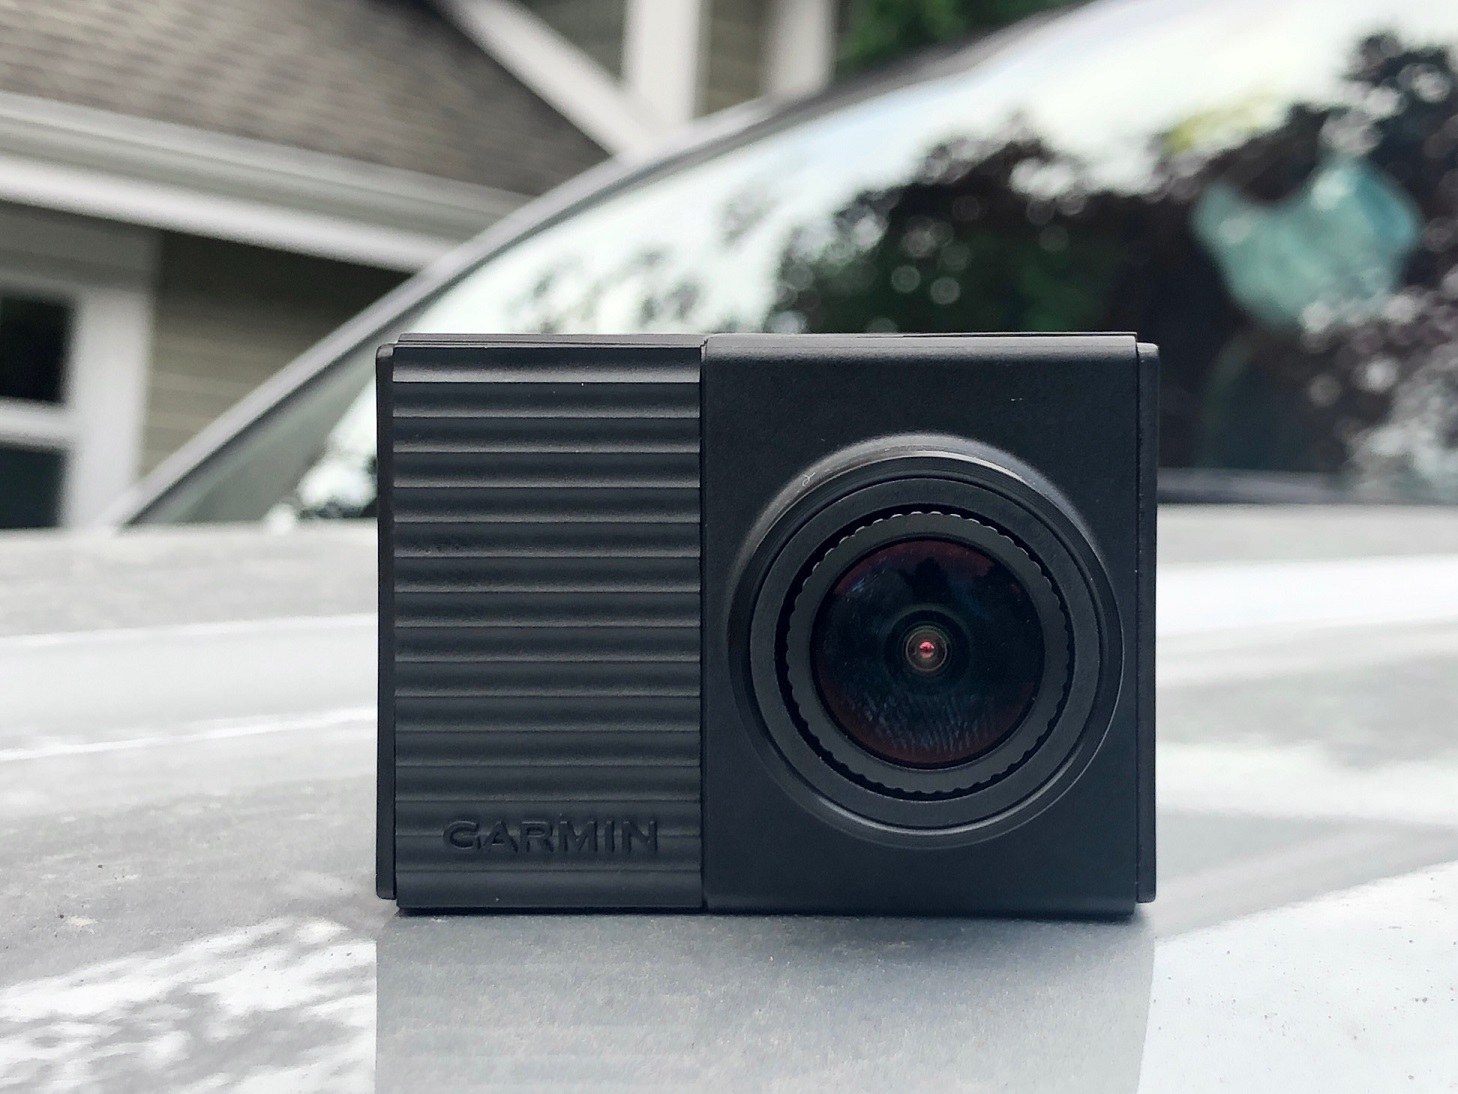 Garmin Dash Cam Tandem - Dual 1440p Front and 720p Interior Night Vision  Lenses